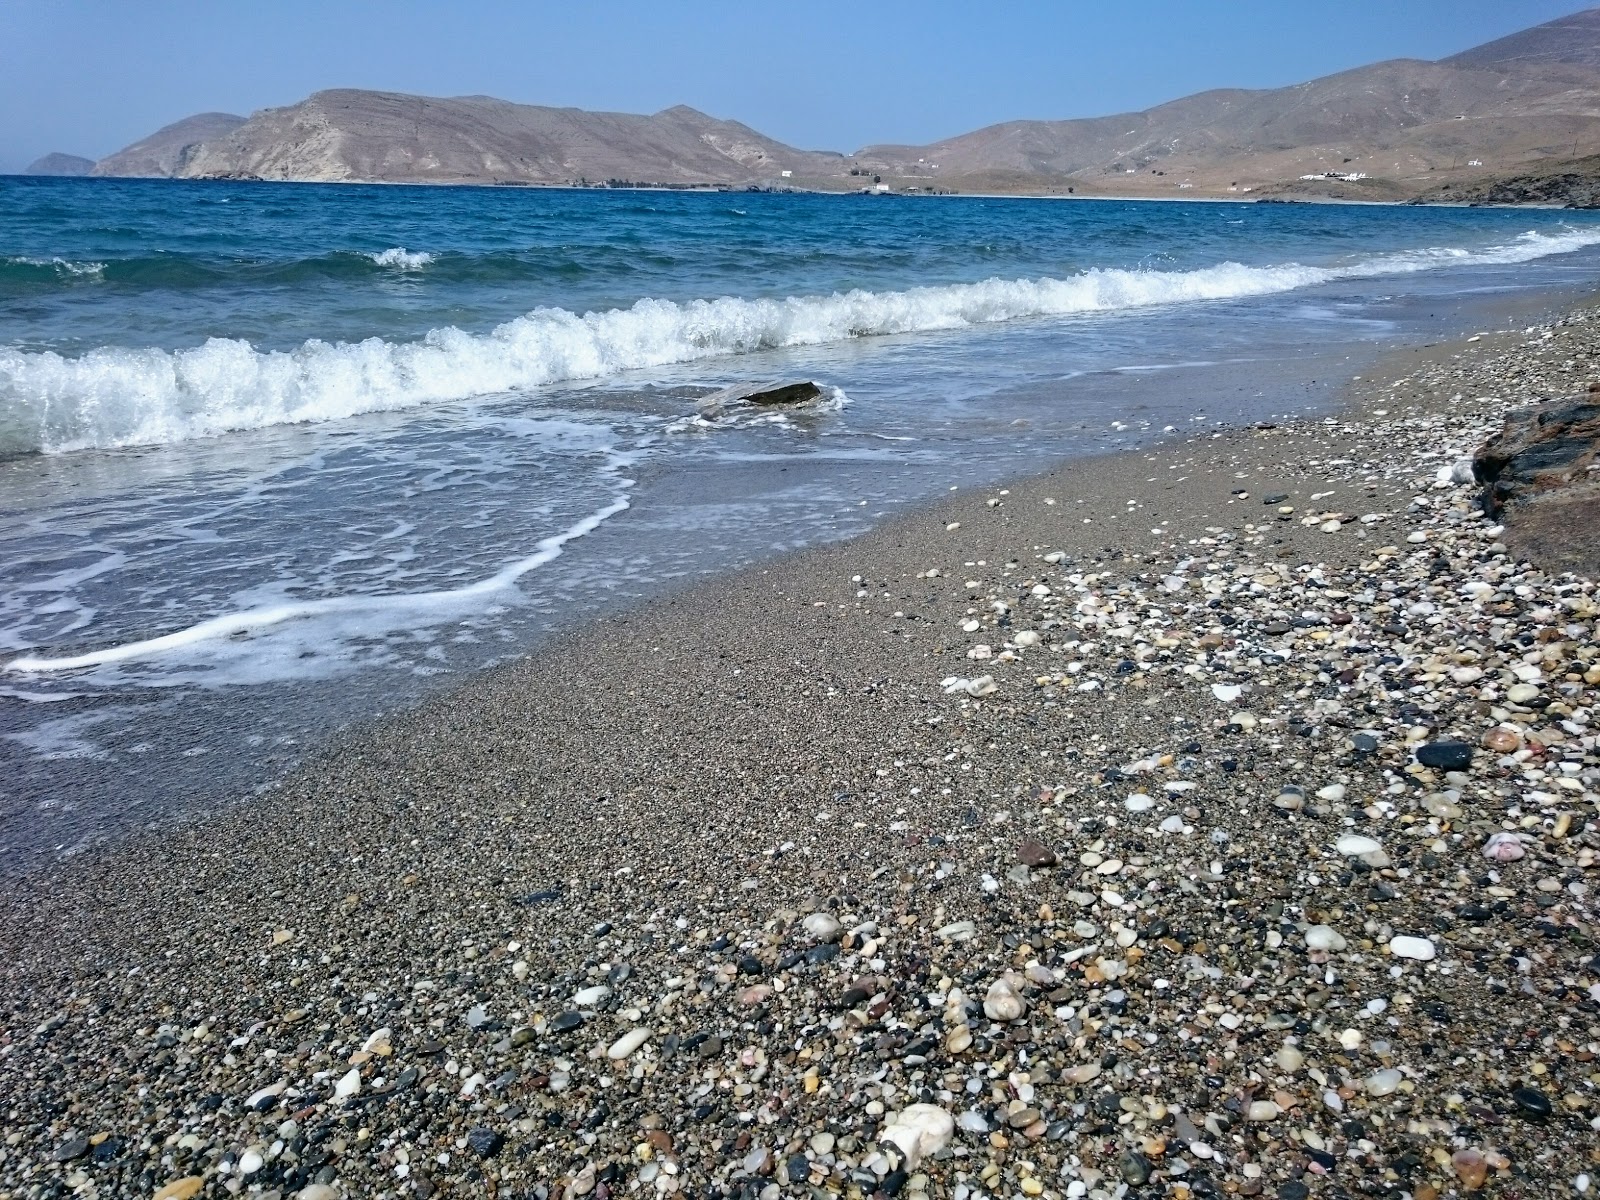 Paralia Lakka'in fotoğrafı geniş plaj ile birlikte